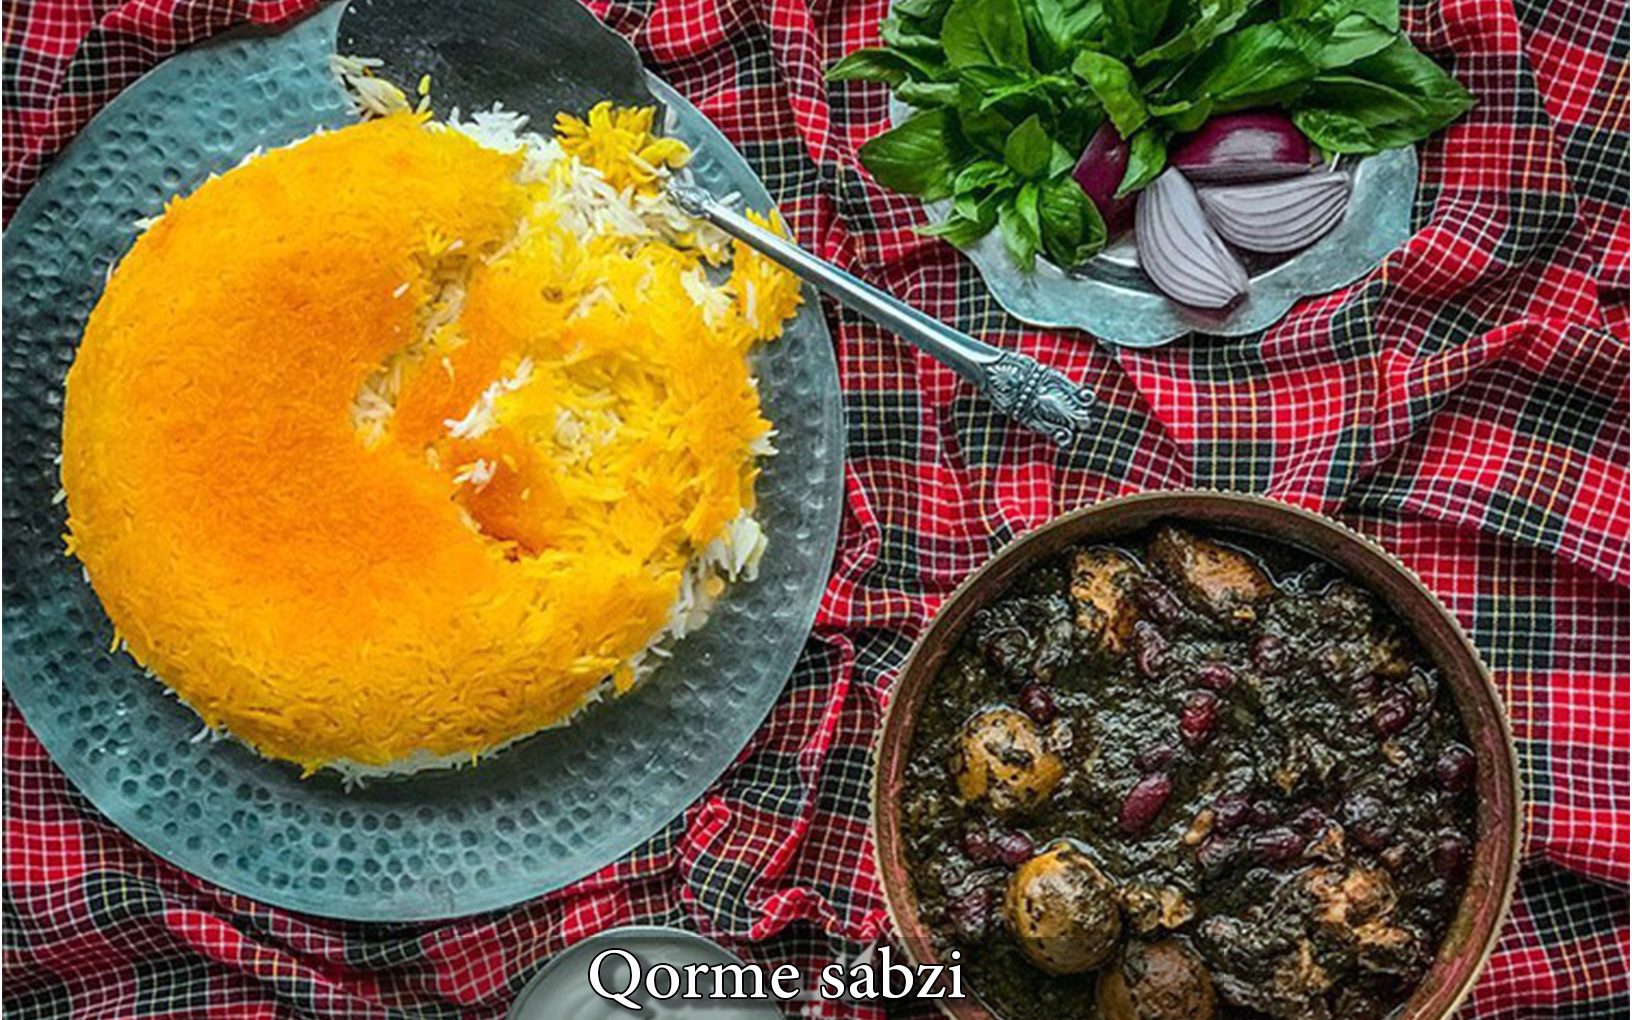 Qorme sabzi Iranian foods